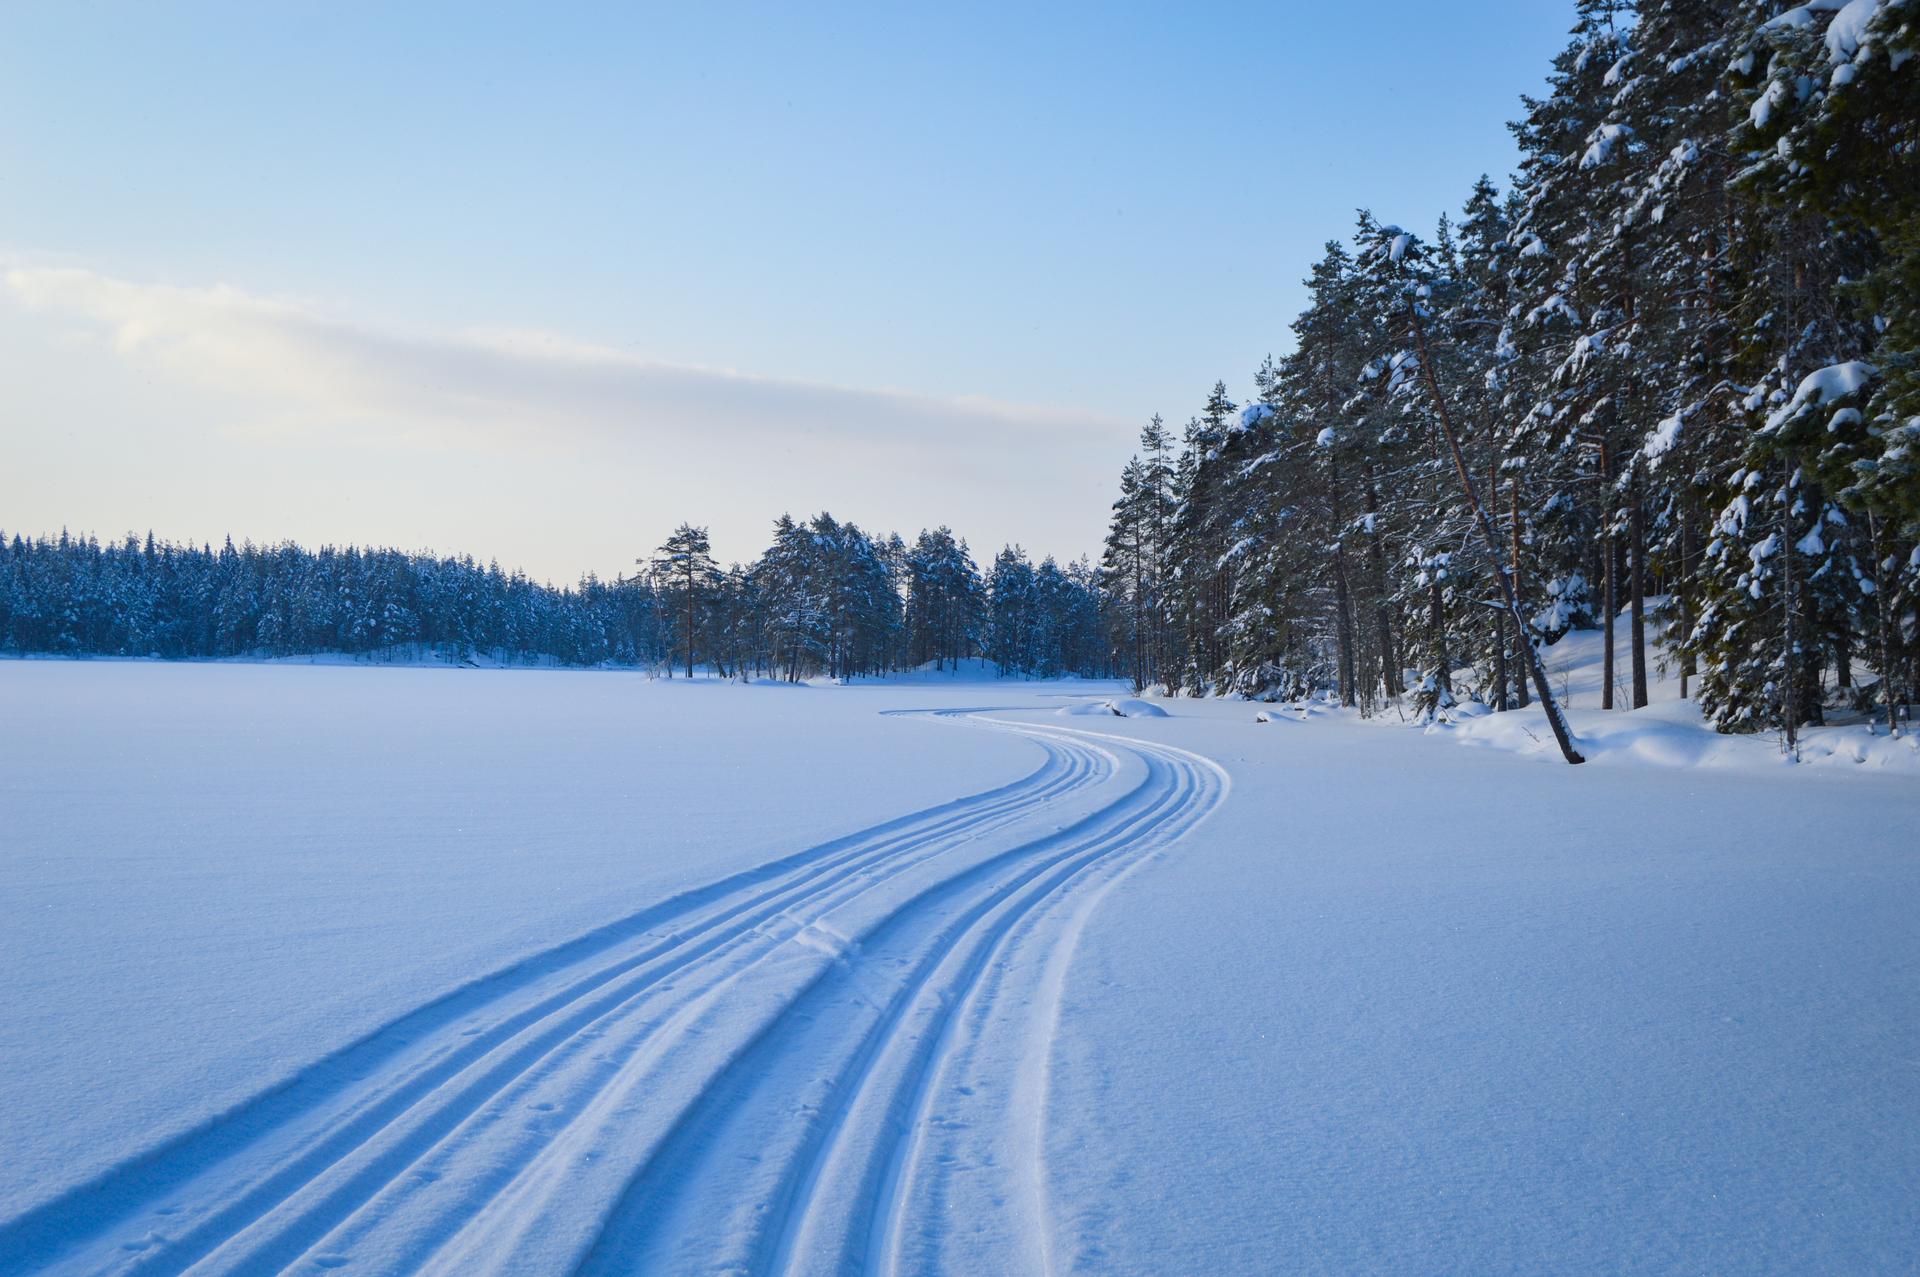 Largas pistas de esquí serpentean a través del paisaje invernal alrededor de un lago en la naturaleza salvaje de Suecia.